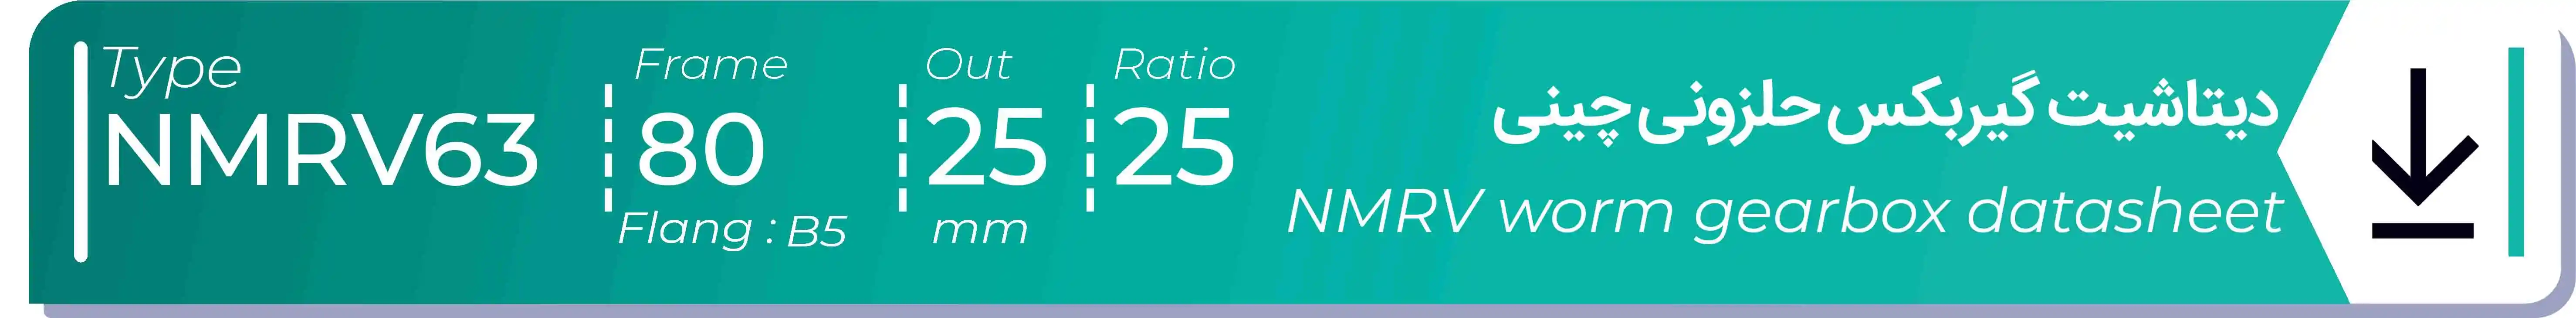  دیتاشیت و مشخصات فنی گیربکس حلزونی چینی   NMRV63  -  با خروجی 25- میلی متر و نسبت25 و فریم 80